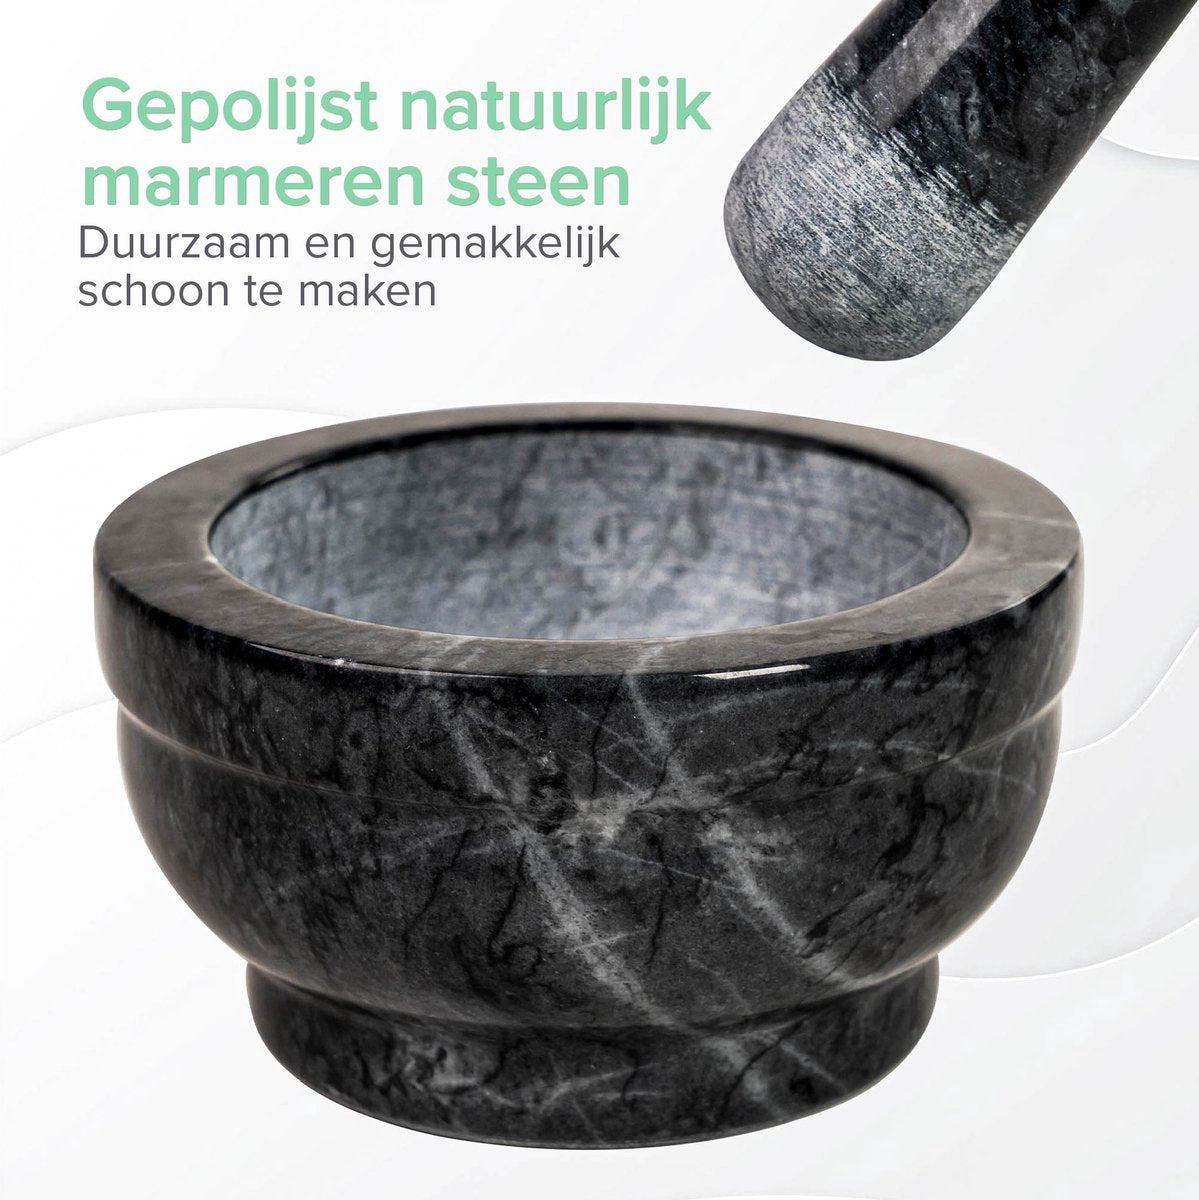 Coninx Vijzel - Mortier with Stamper - Herbstamper - Ø15 x H8cm - Black Marble polished